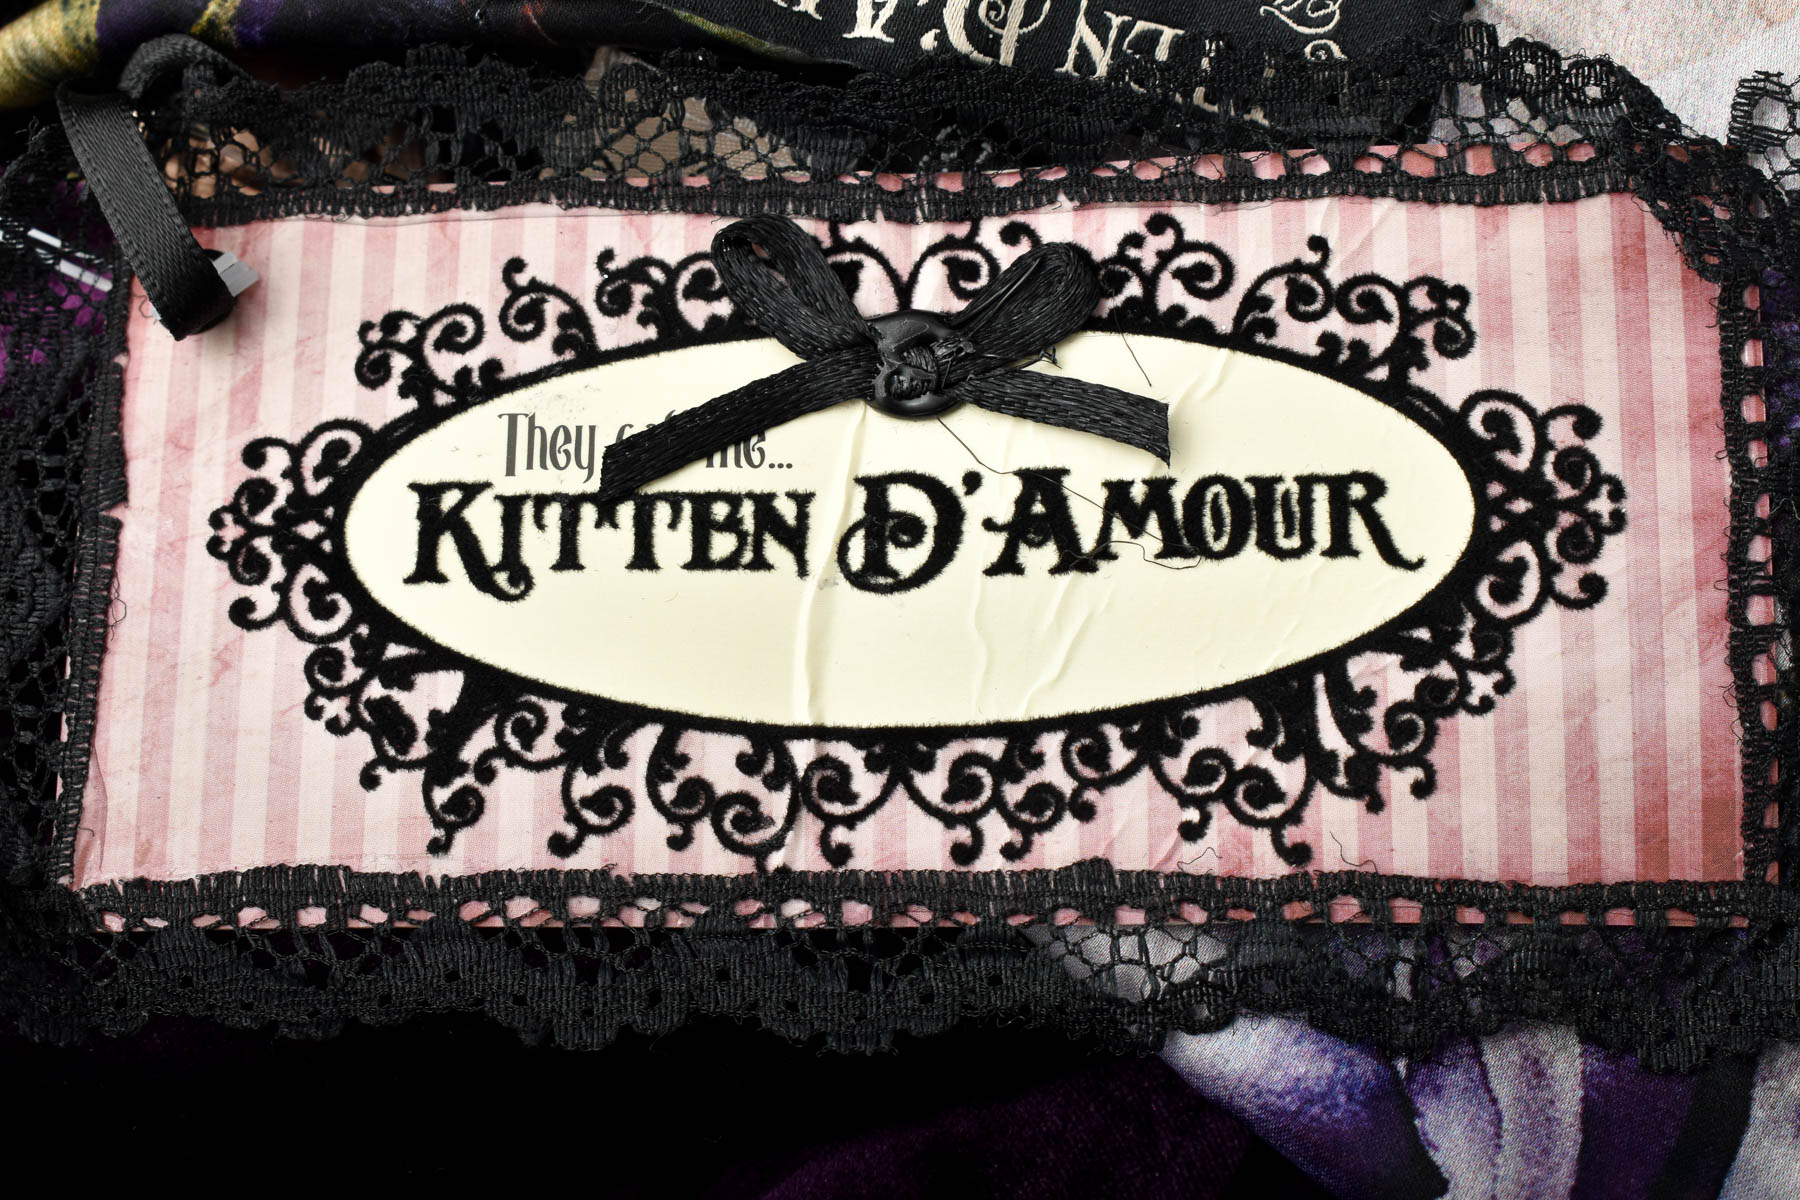 Rochiа - Kitten D'Amour - 2